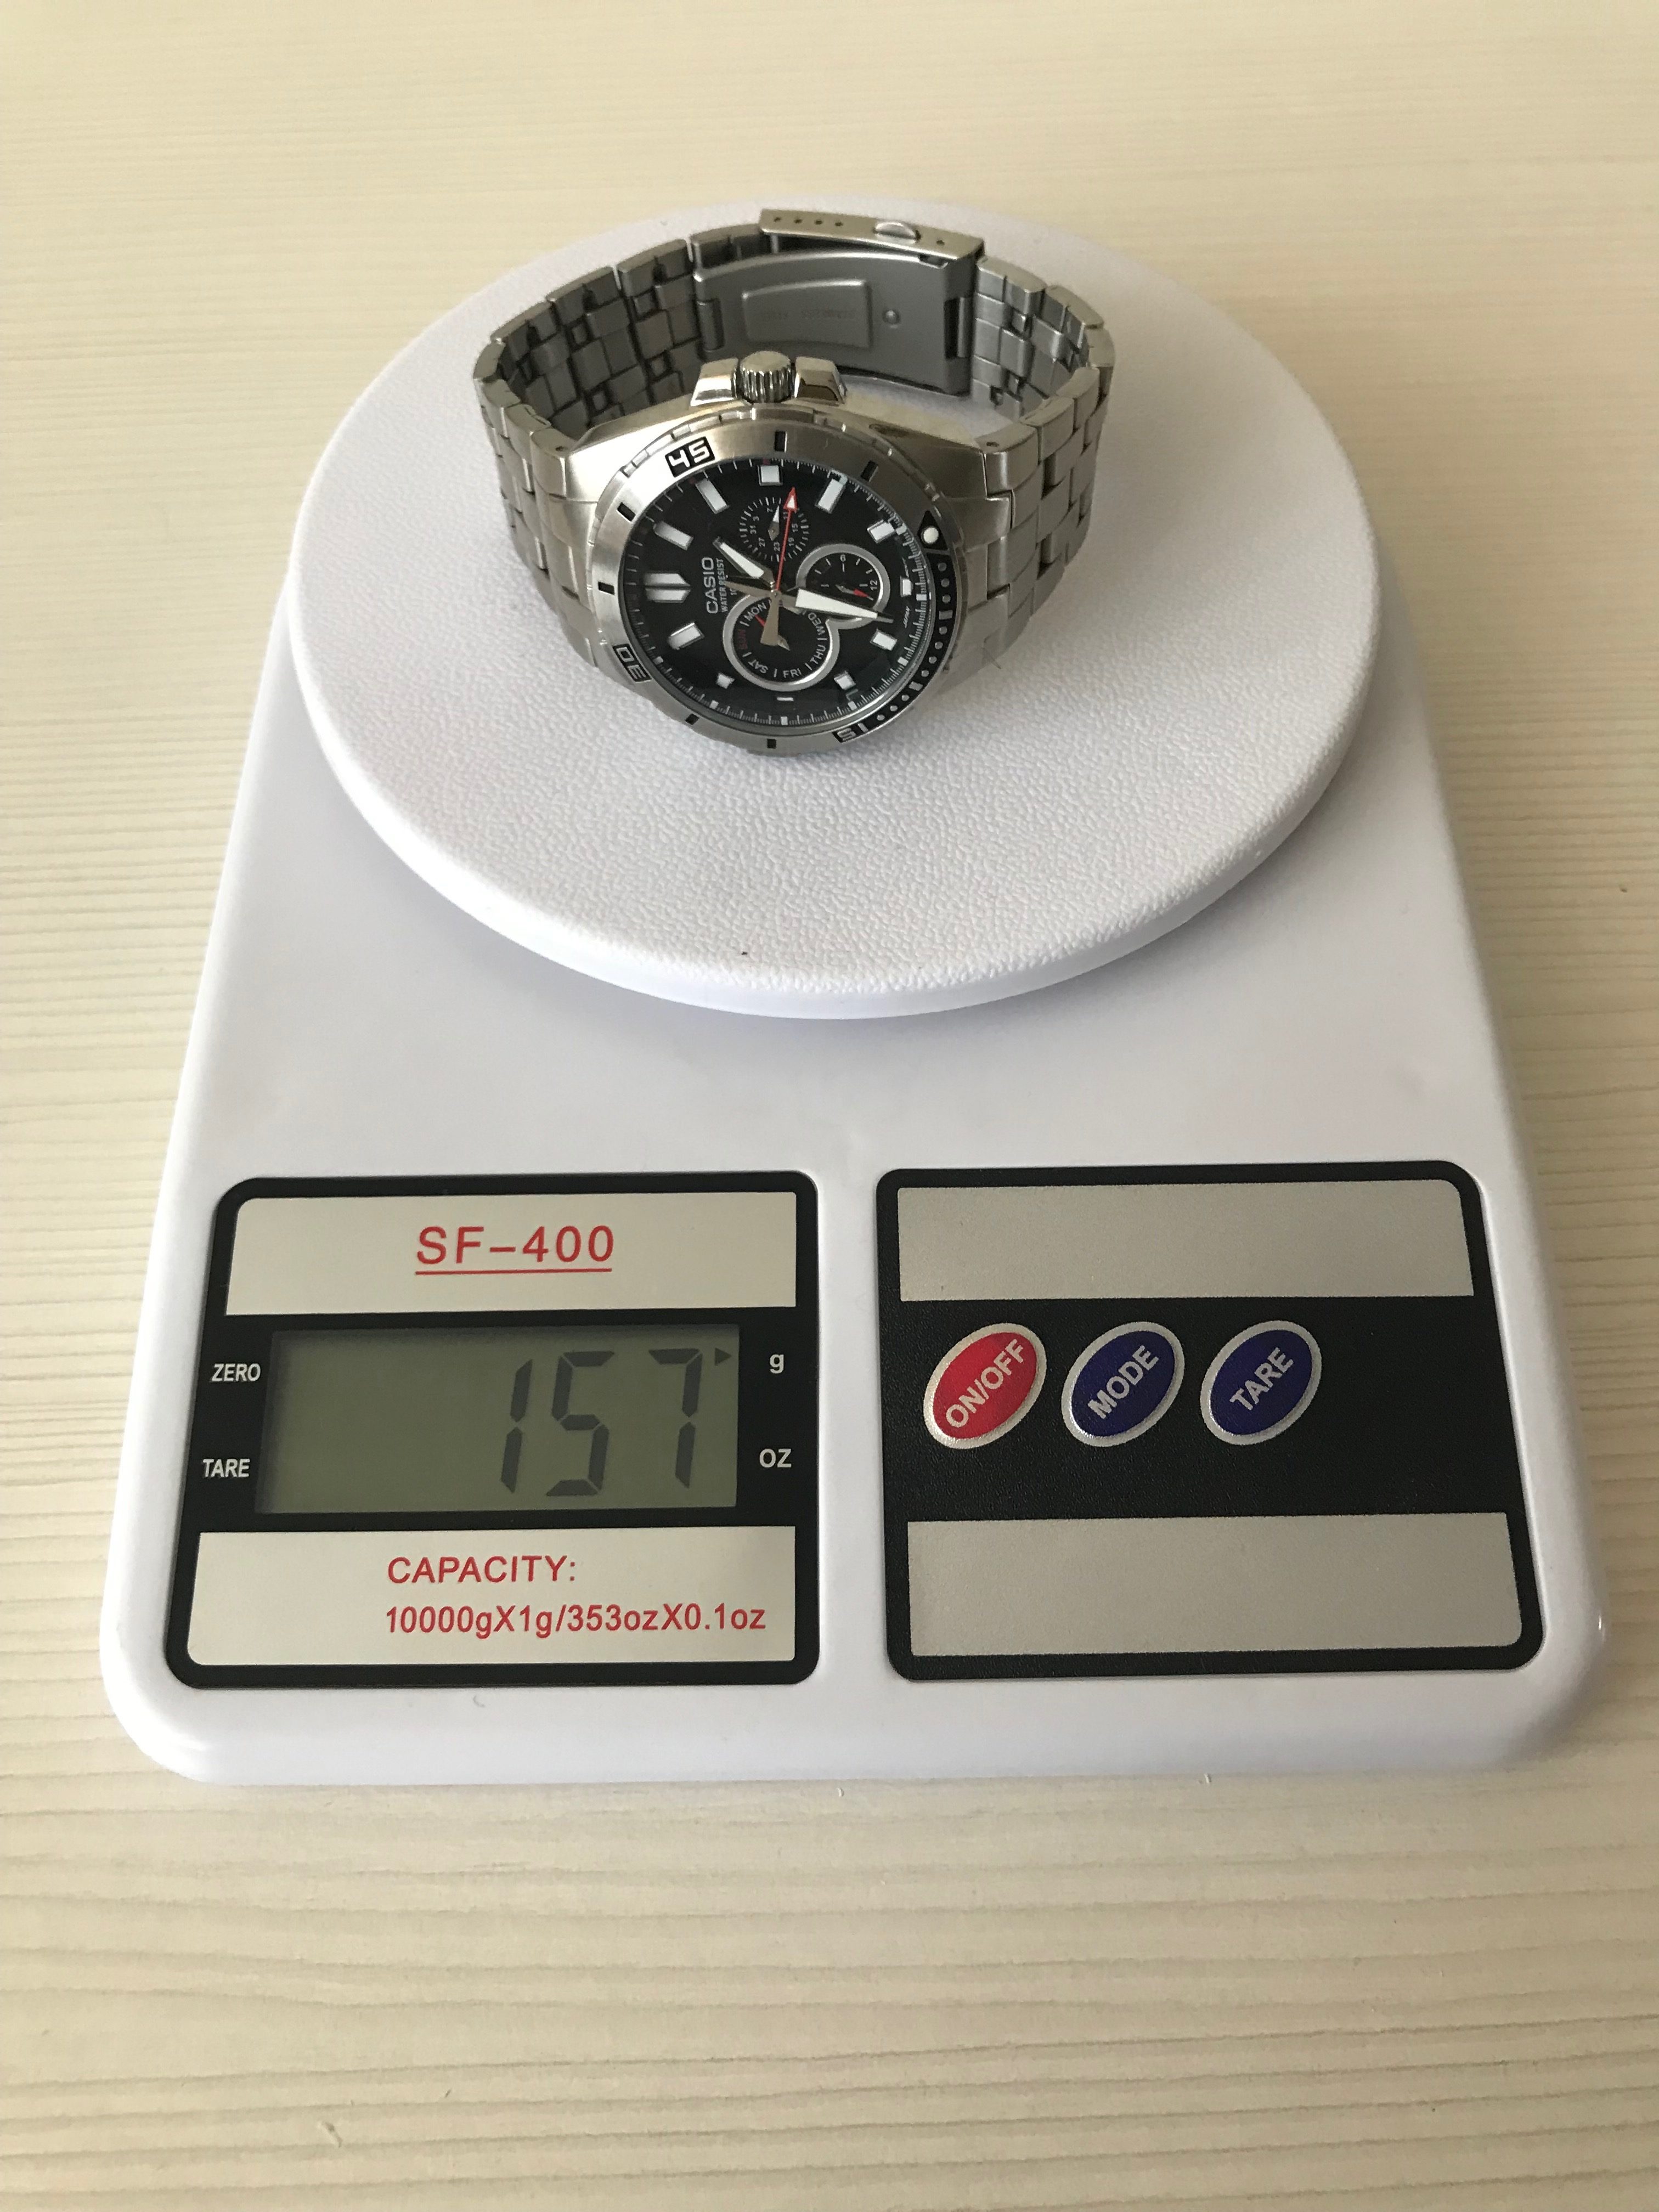 Kolik váží pánské hodinky Casio?